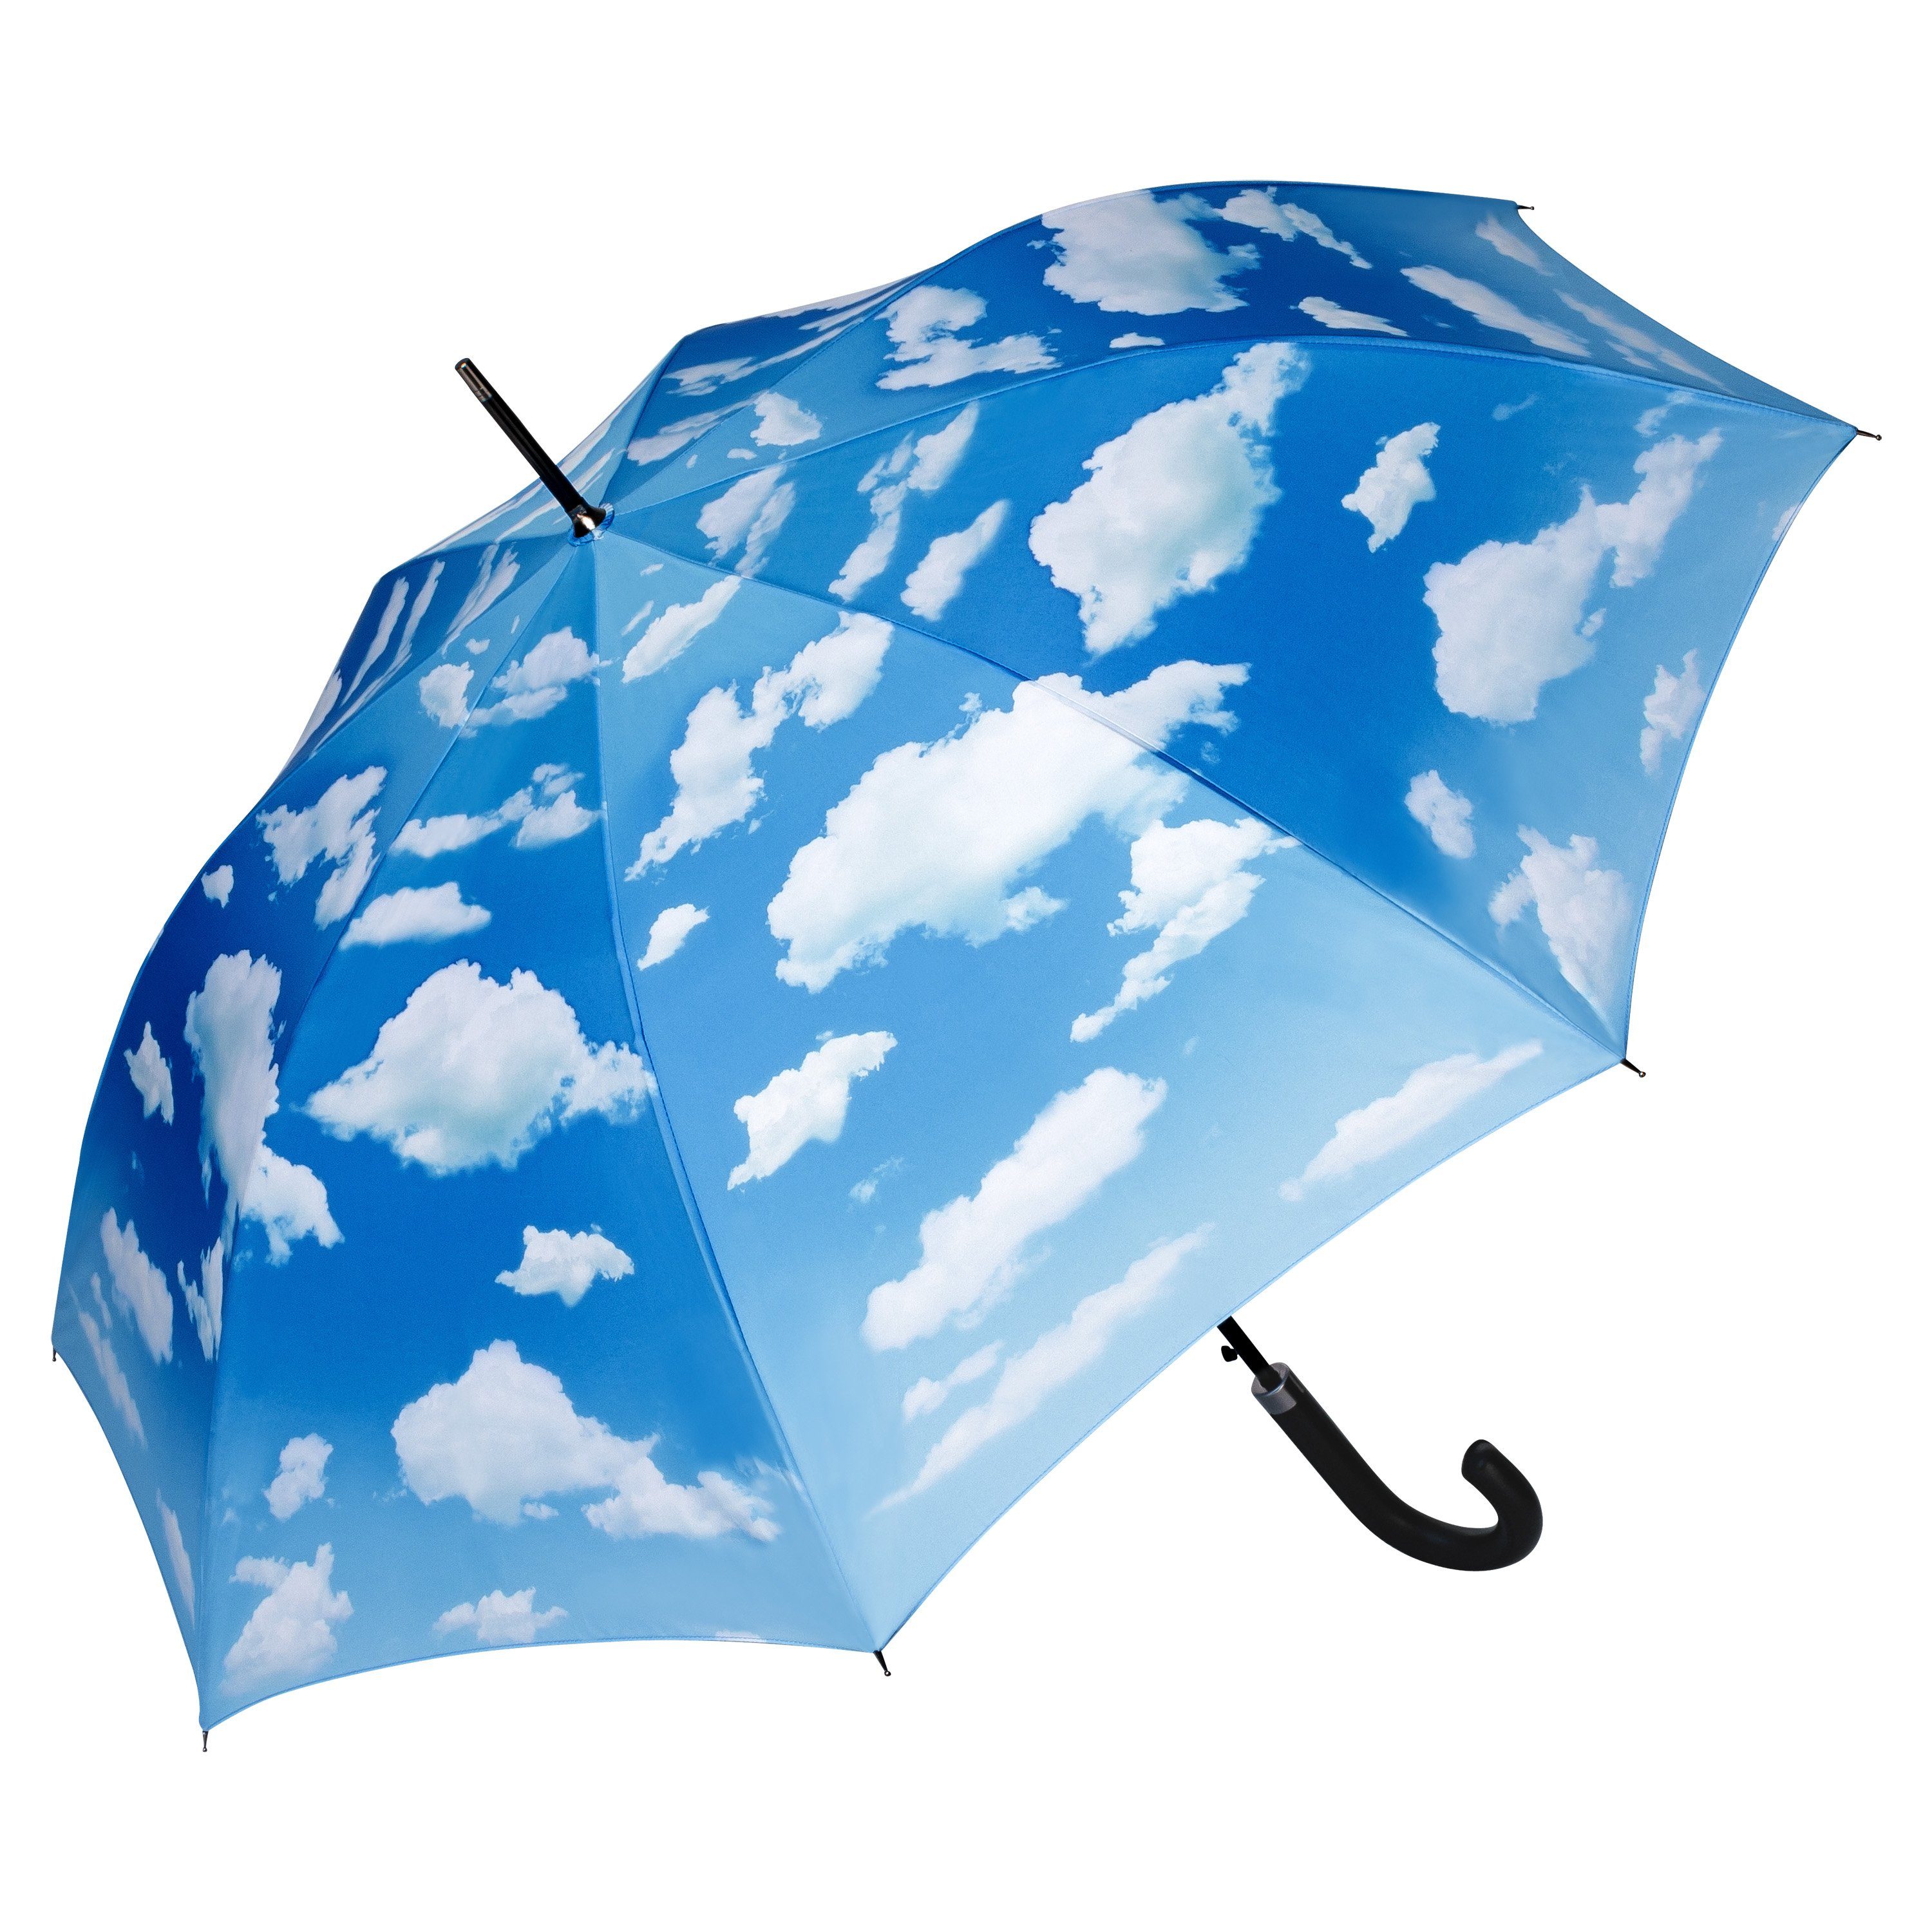 von Lilienfeld Langregenschirm Himmel UV-Schutz Motiv mit Automatikschirm Stabil, Bayrischer Wolken